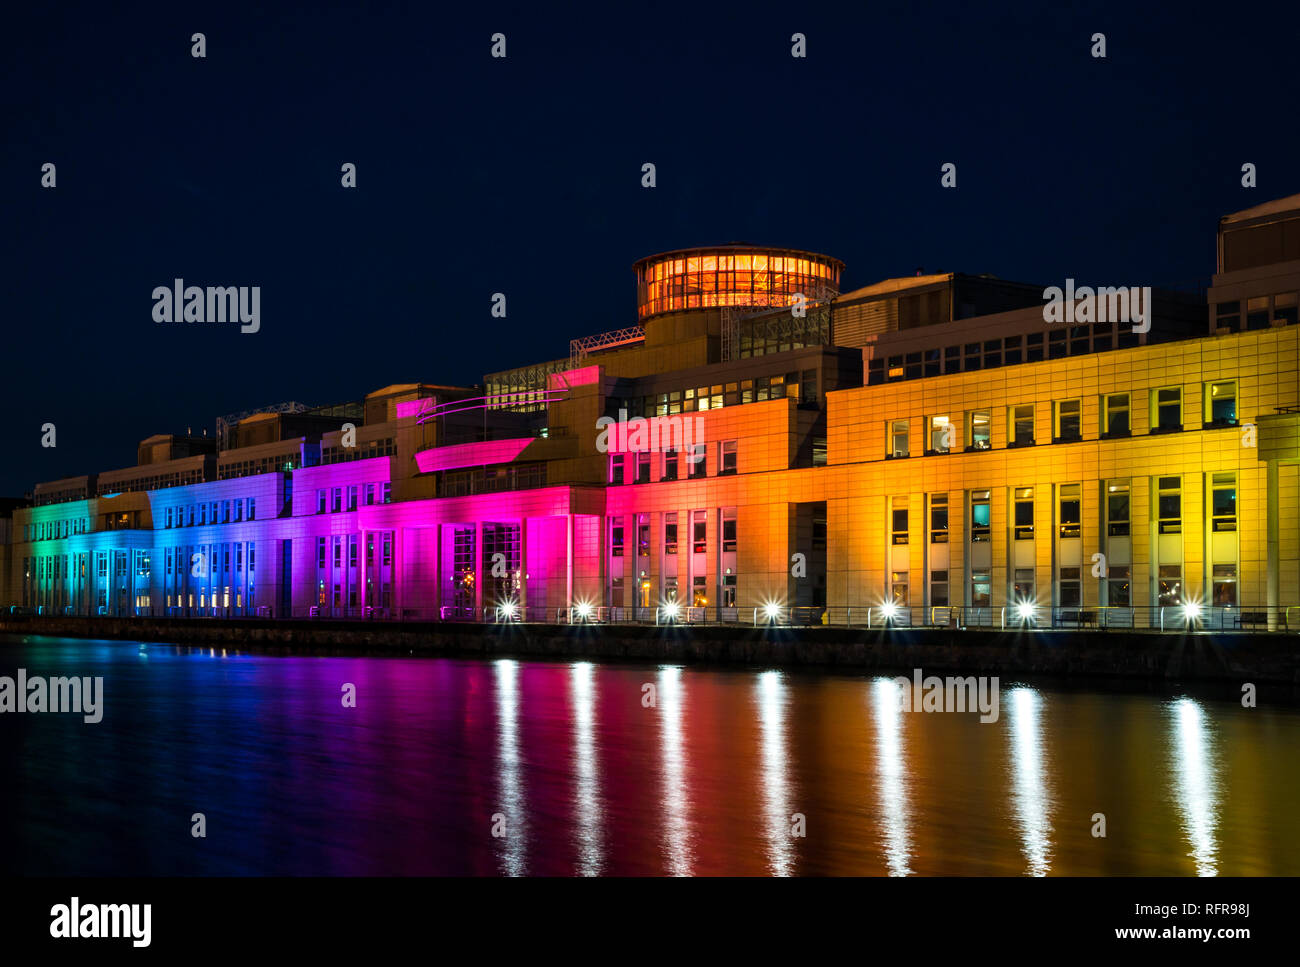 Victoria Quay Governo scozzese edificio, accesa nei colori dell'arcobaleno di notte per la Giornata Internazionale contro l'omofobia, Leith, Edimburgo, Scozia, Regno Unito Foto Stock